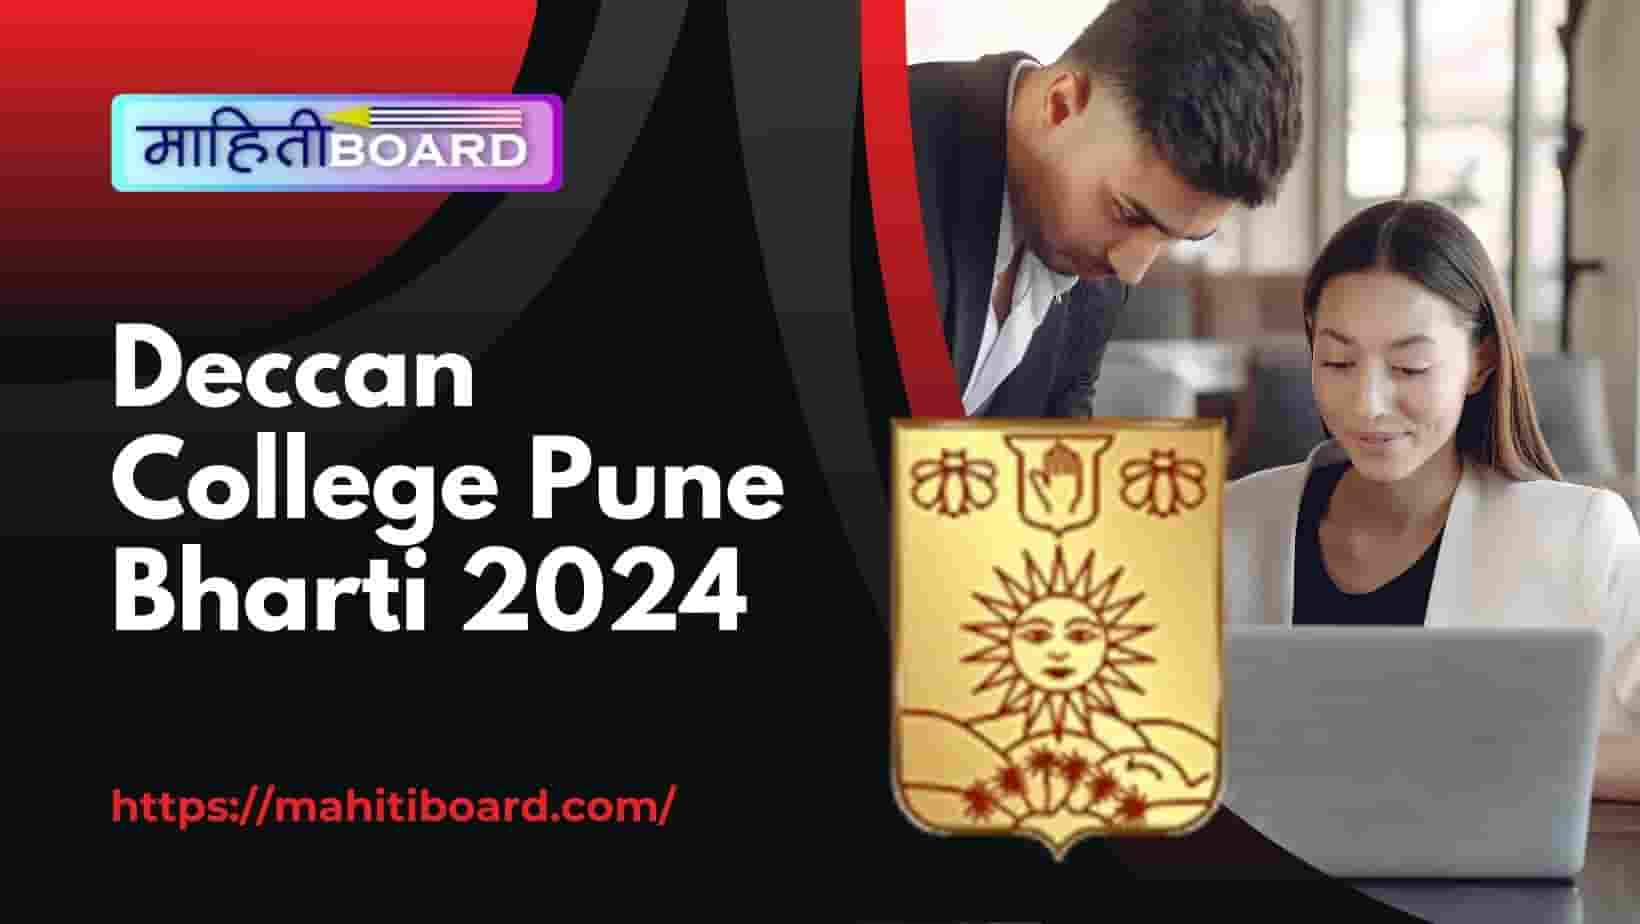 Deccan College Pune Bharti 2024